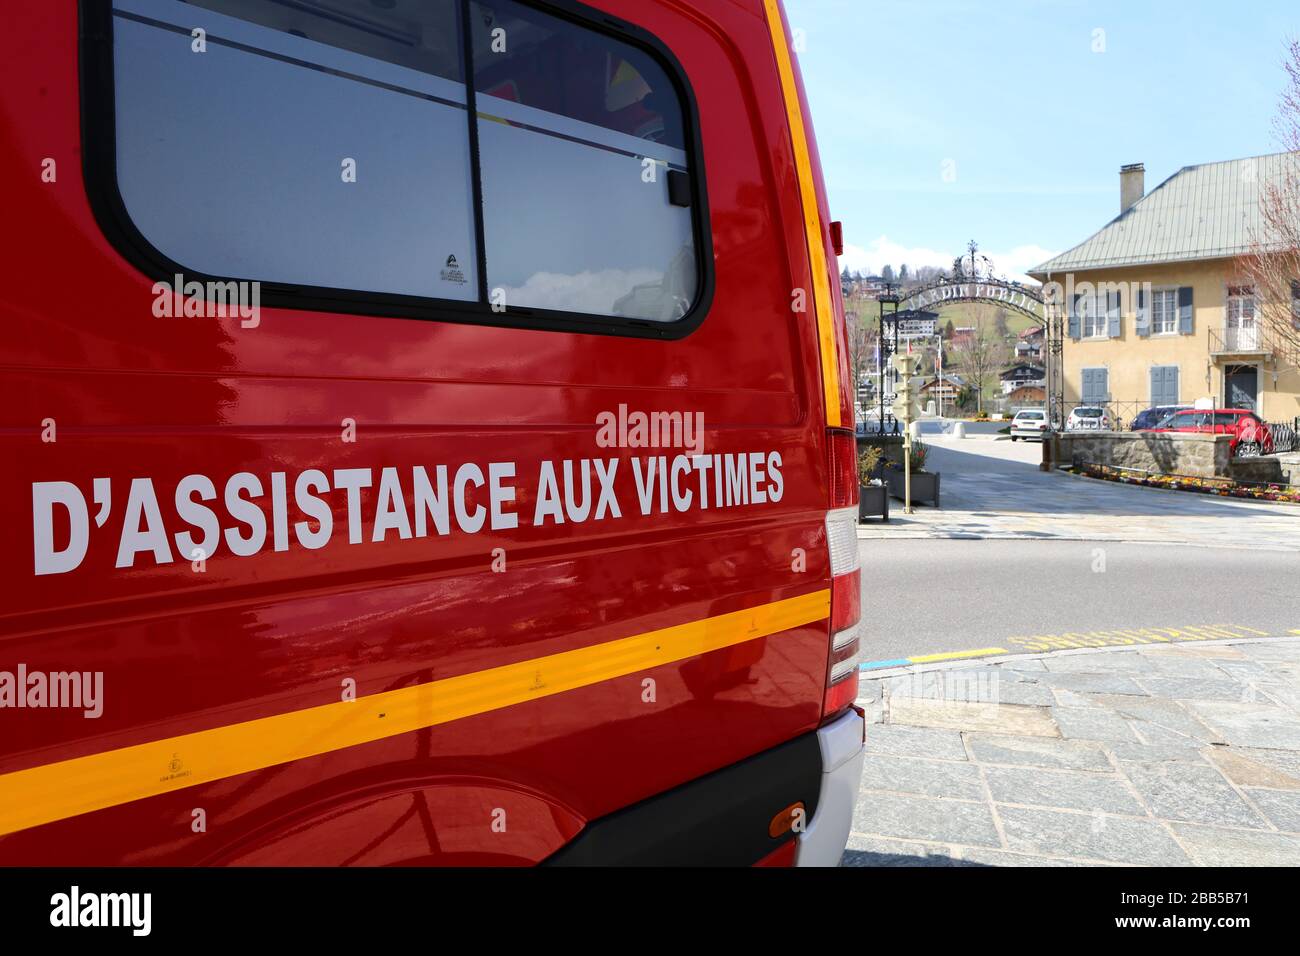 Véhicule de secours et d'assistance aux victimes. Centre-ville. Saint-Gervais-les-Bains. Haute-Savoie. France. Stock Photo